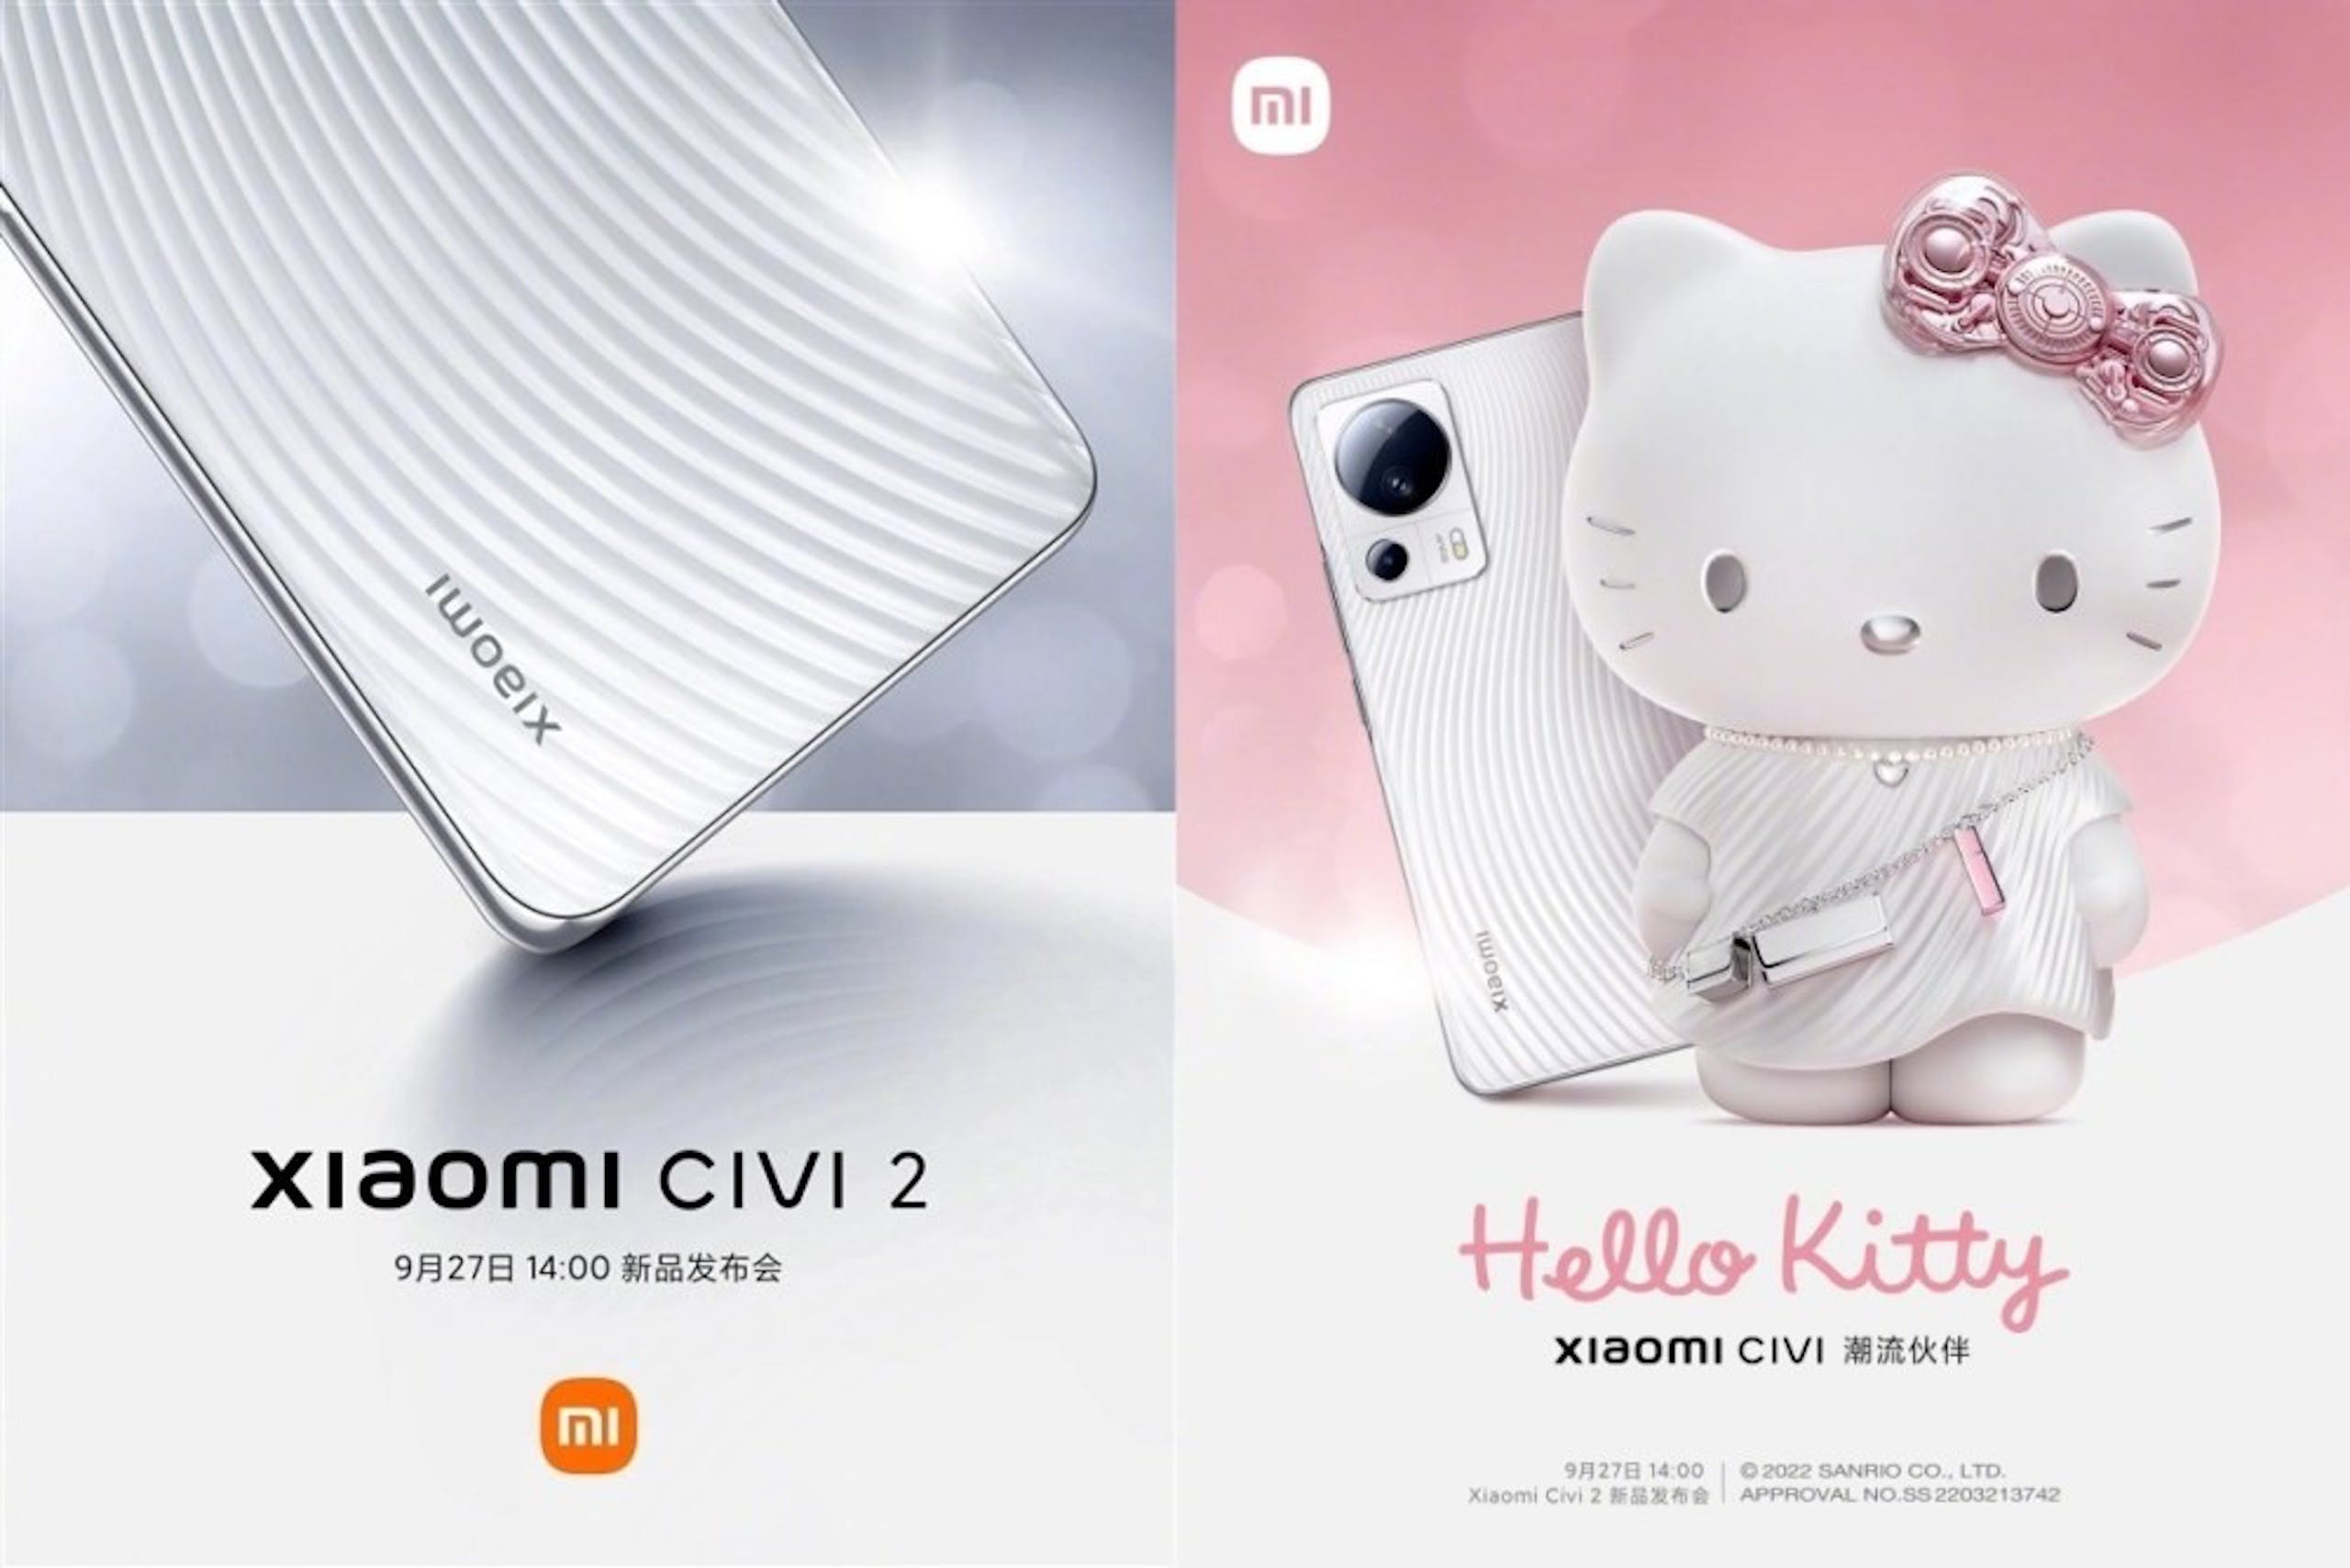 照片中提到了iwoeix、Xiaomi CIVI 2、9月27日 14:00 新品发布会，包含了材料、小米米11、小米奇維、小米、手機